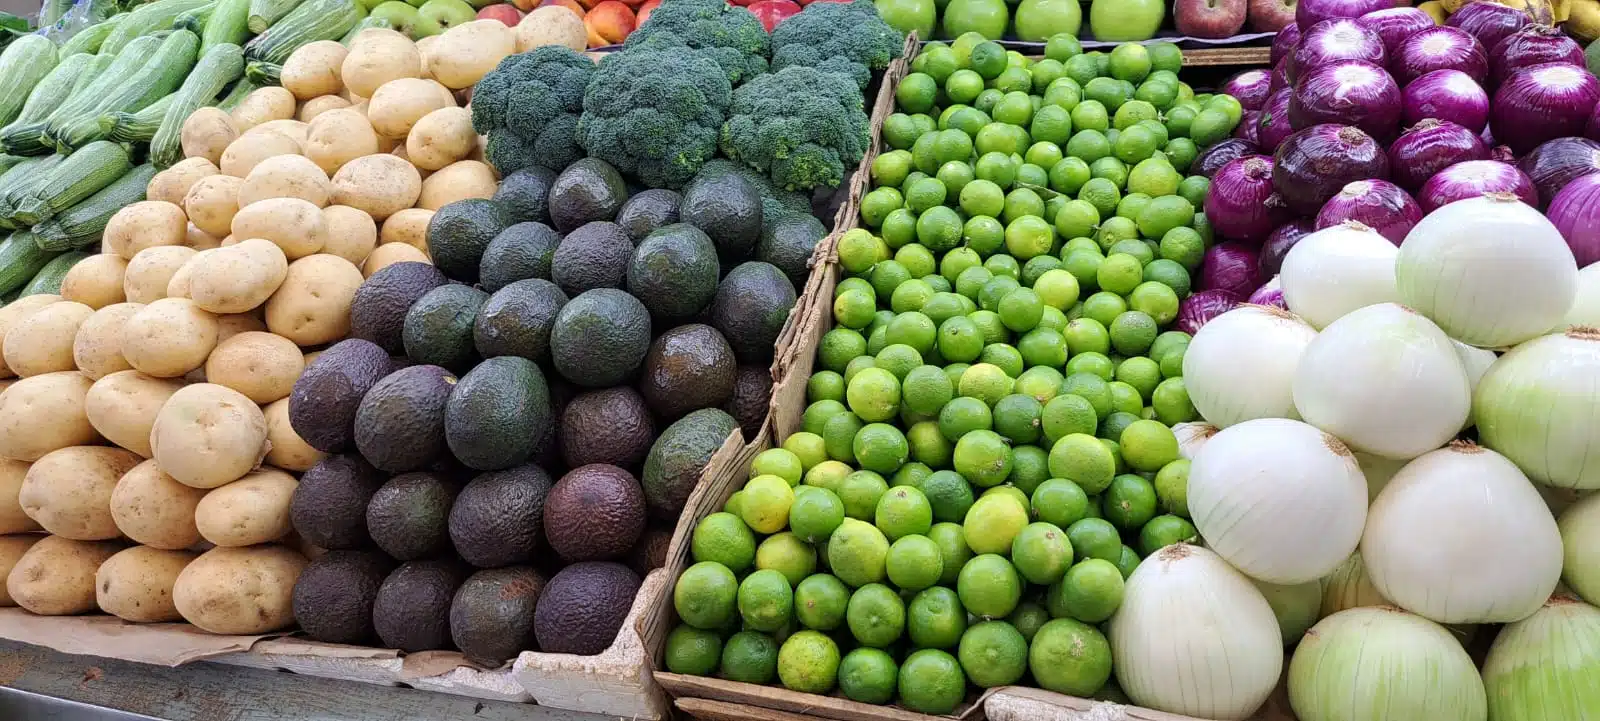 Verduras en mercado